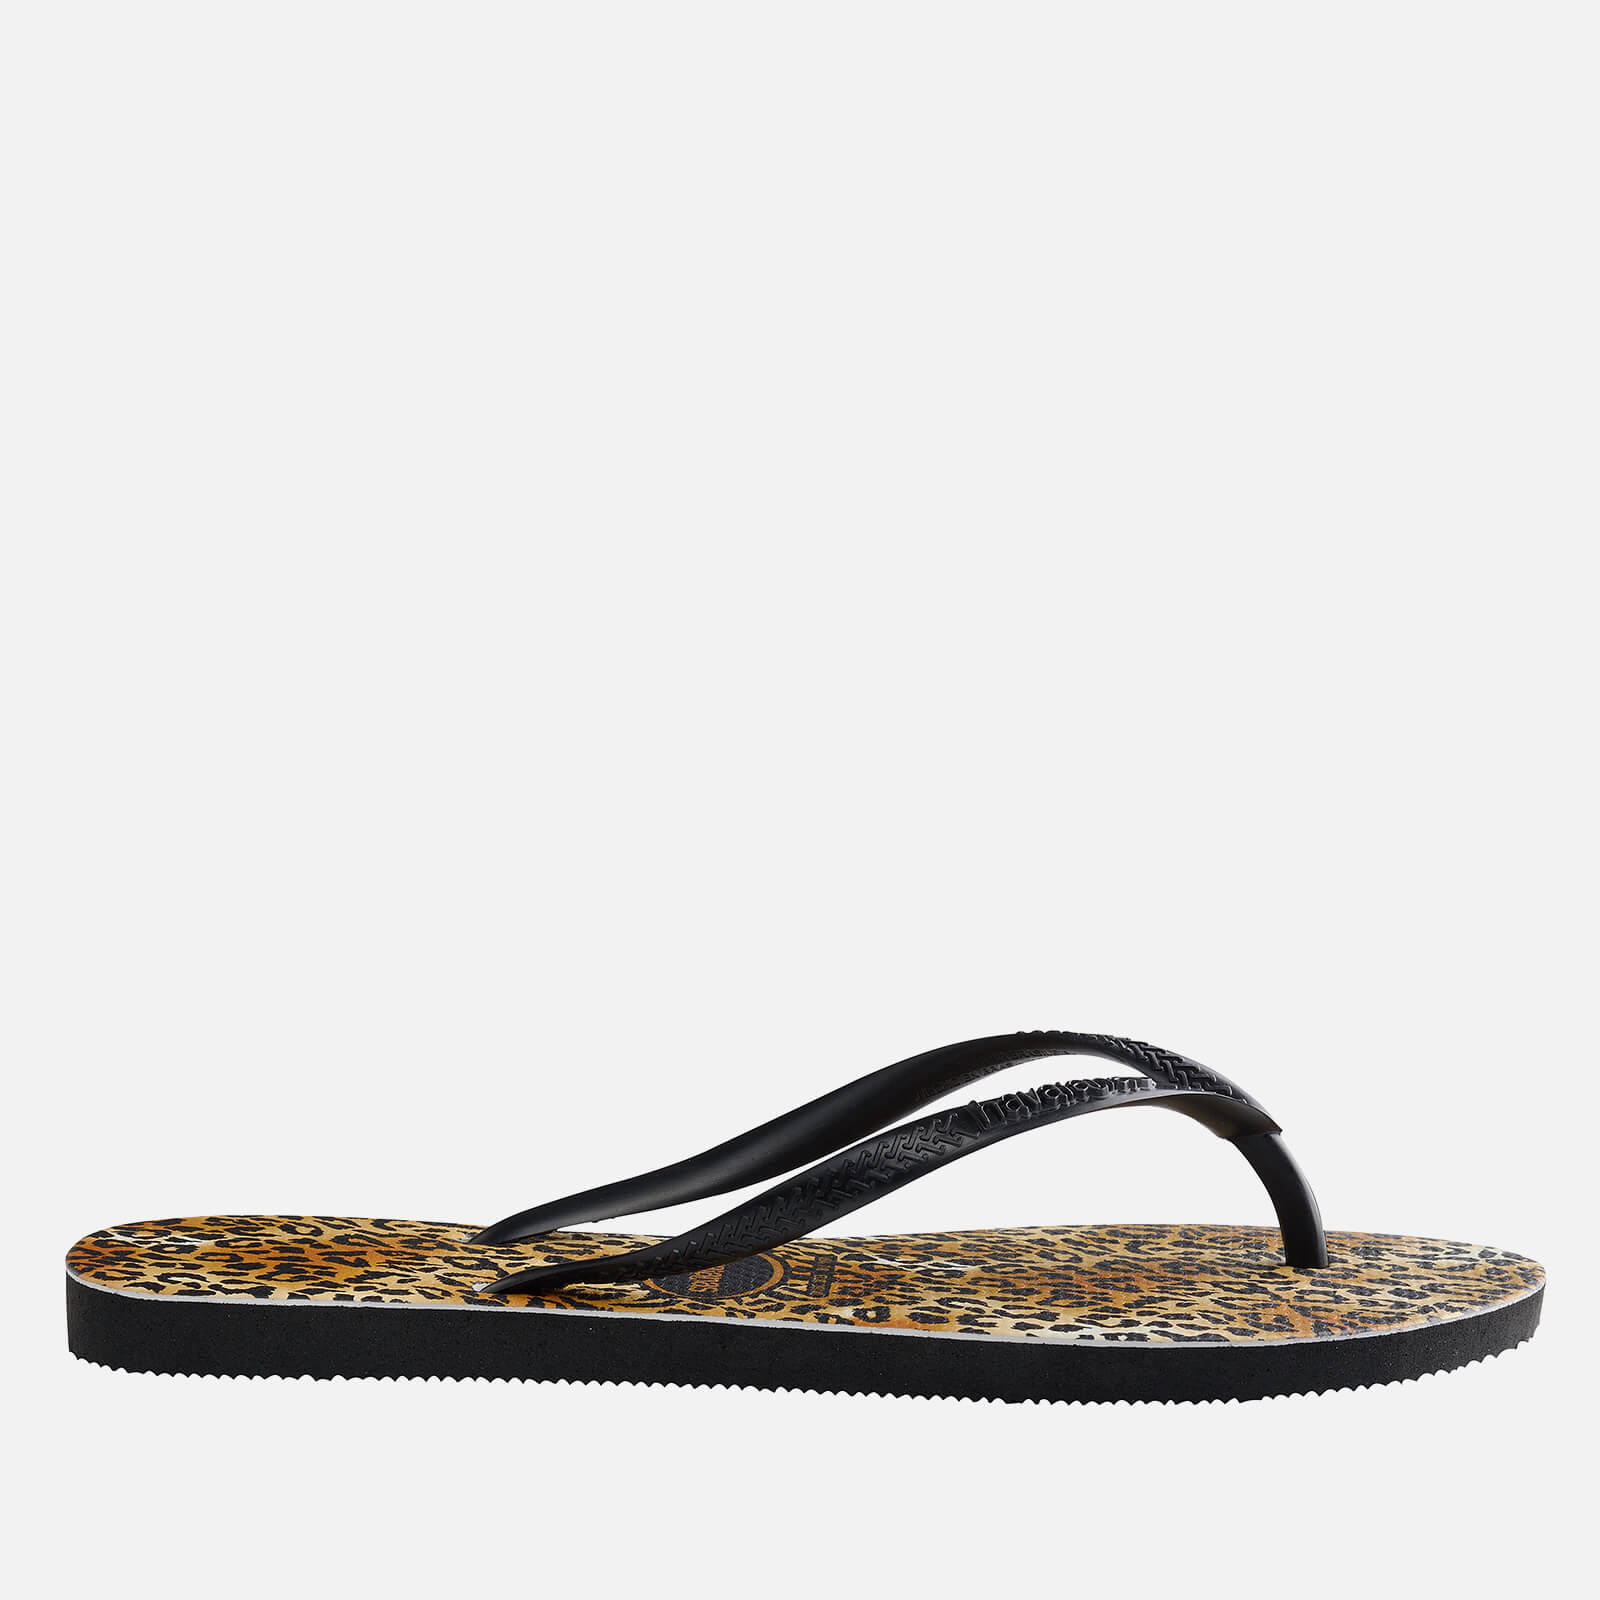 Havaianas Women's Slim Leopard Flip Flops - Black - UK 3/UK 4